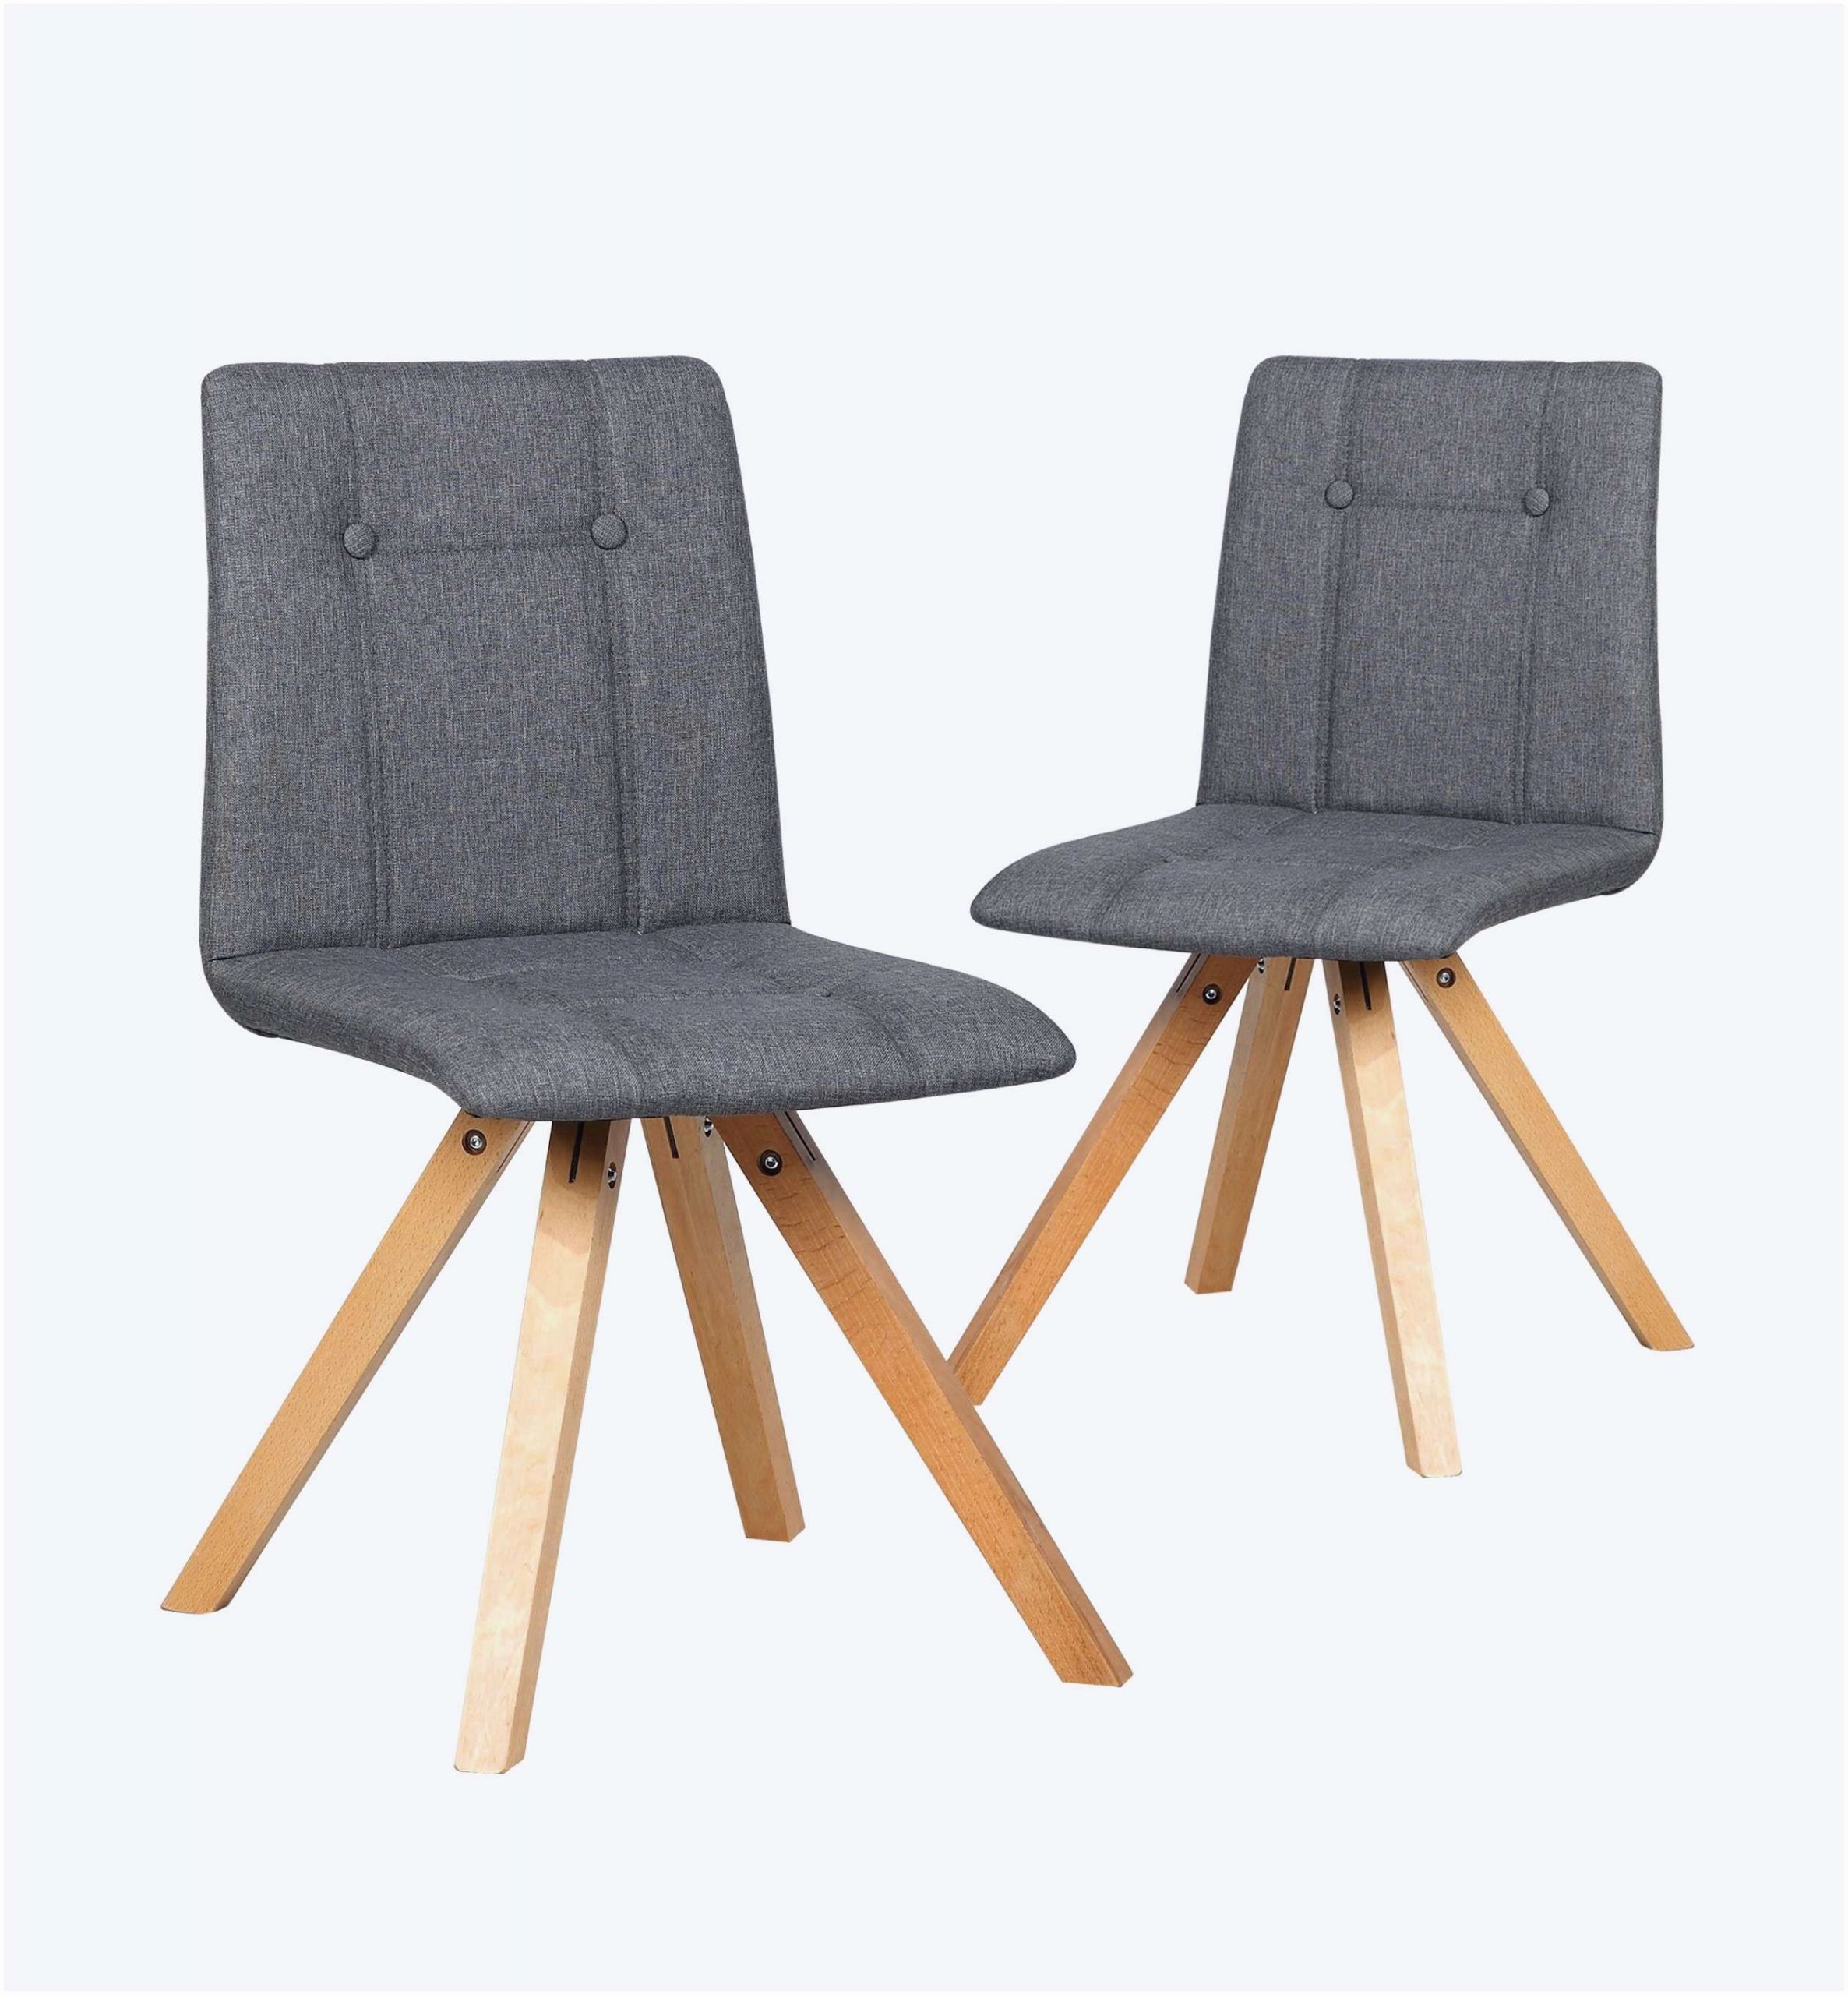 fauteuil de jardin en bois elegant 23 frais chaise en bois pas cher de fauteuil de jardin en bois